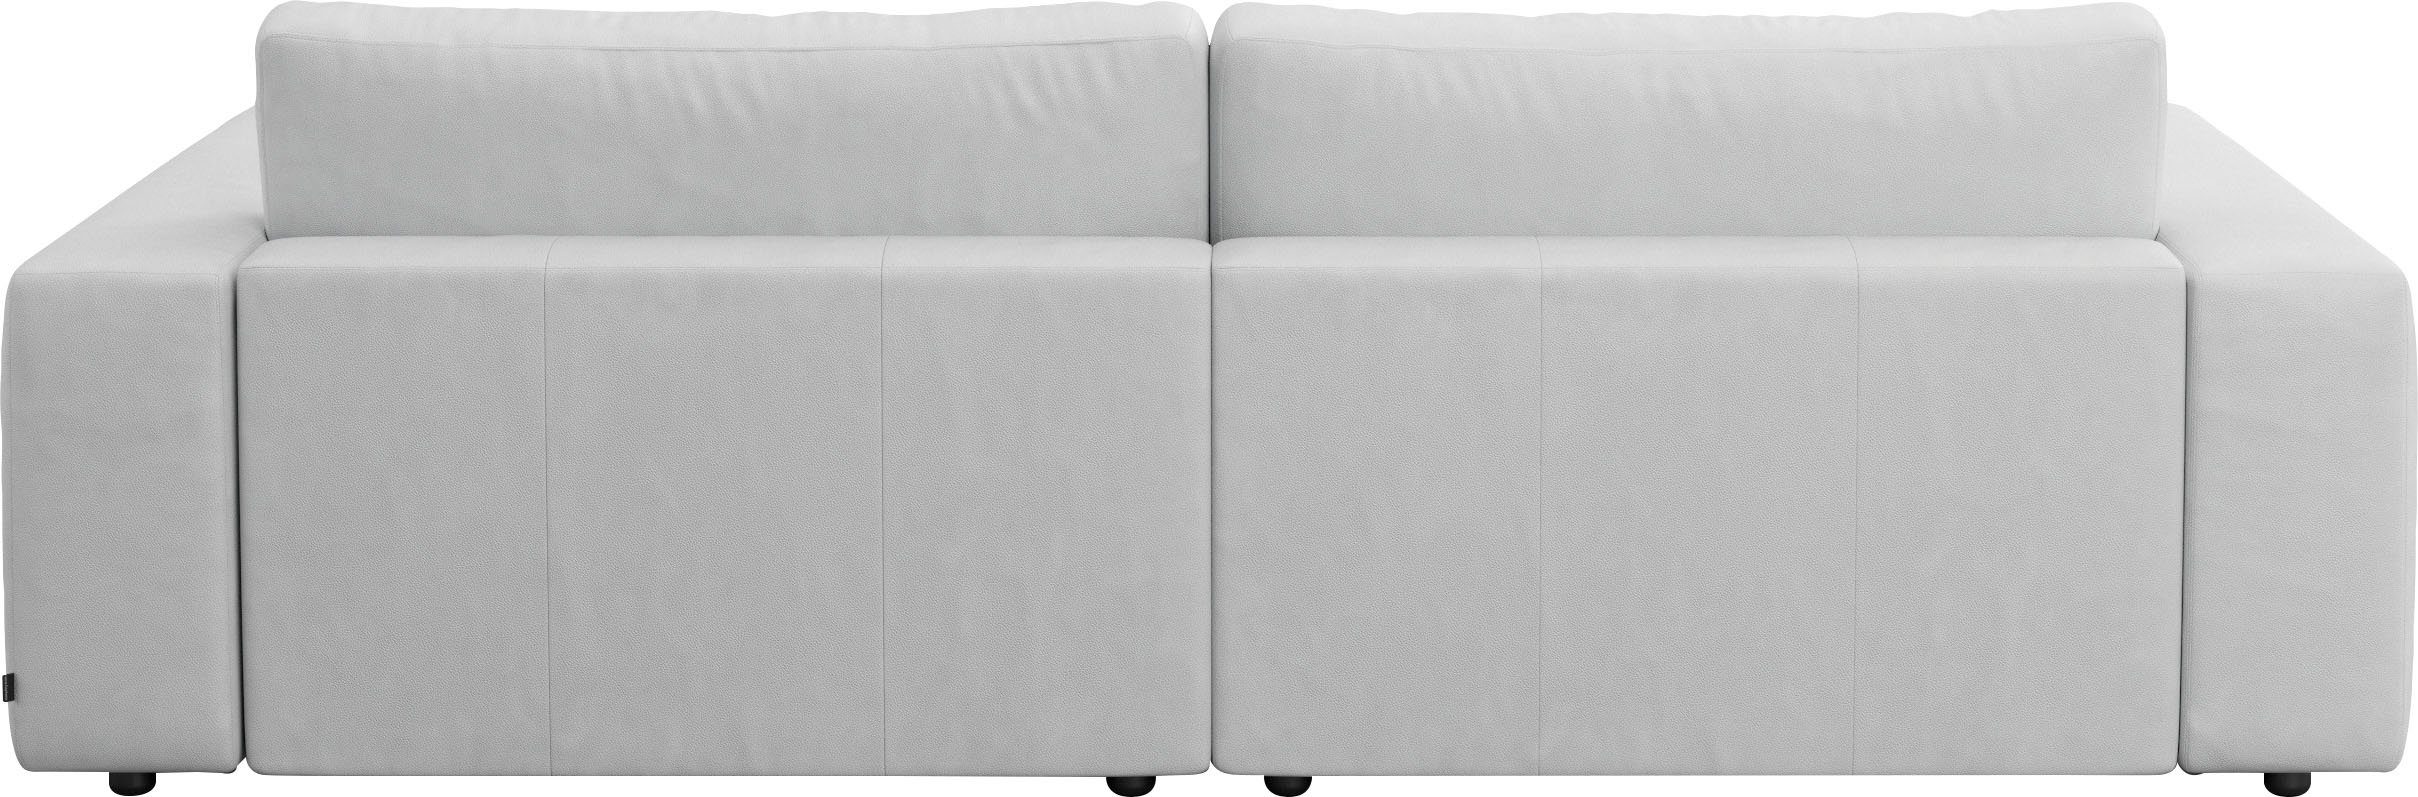 unterschiedlichen in Nähten, 2,5-Sitzer Musterring Big-Sofa Qualitäten vielen by 4 branded und GALLERY LUCIA, M